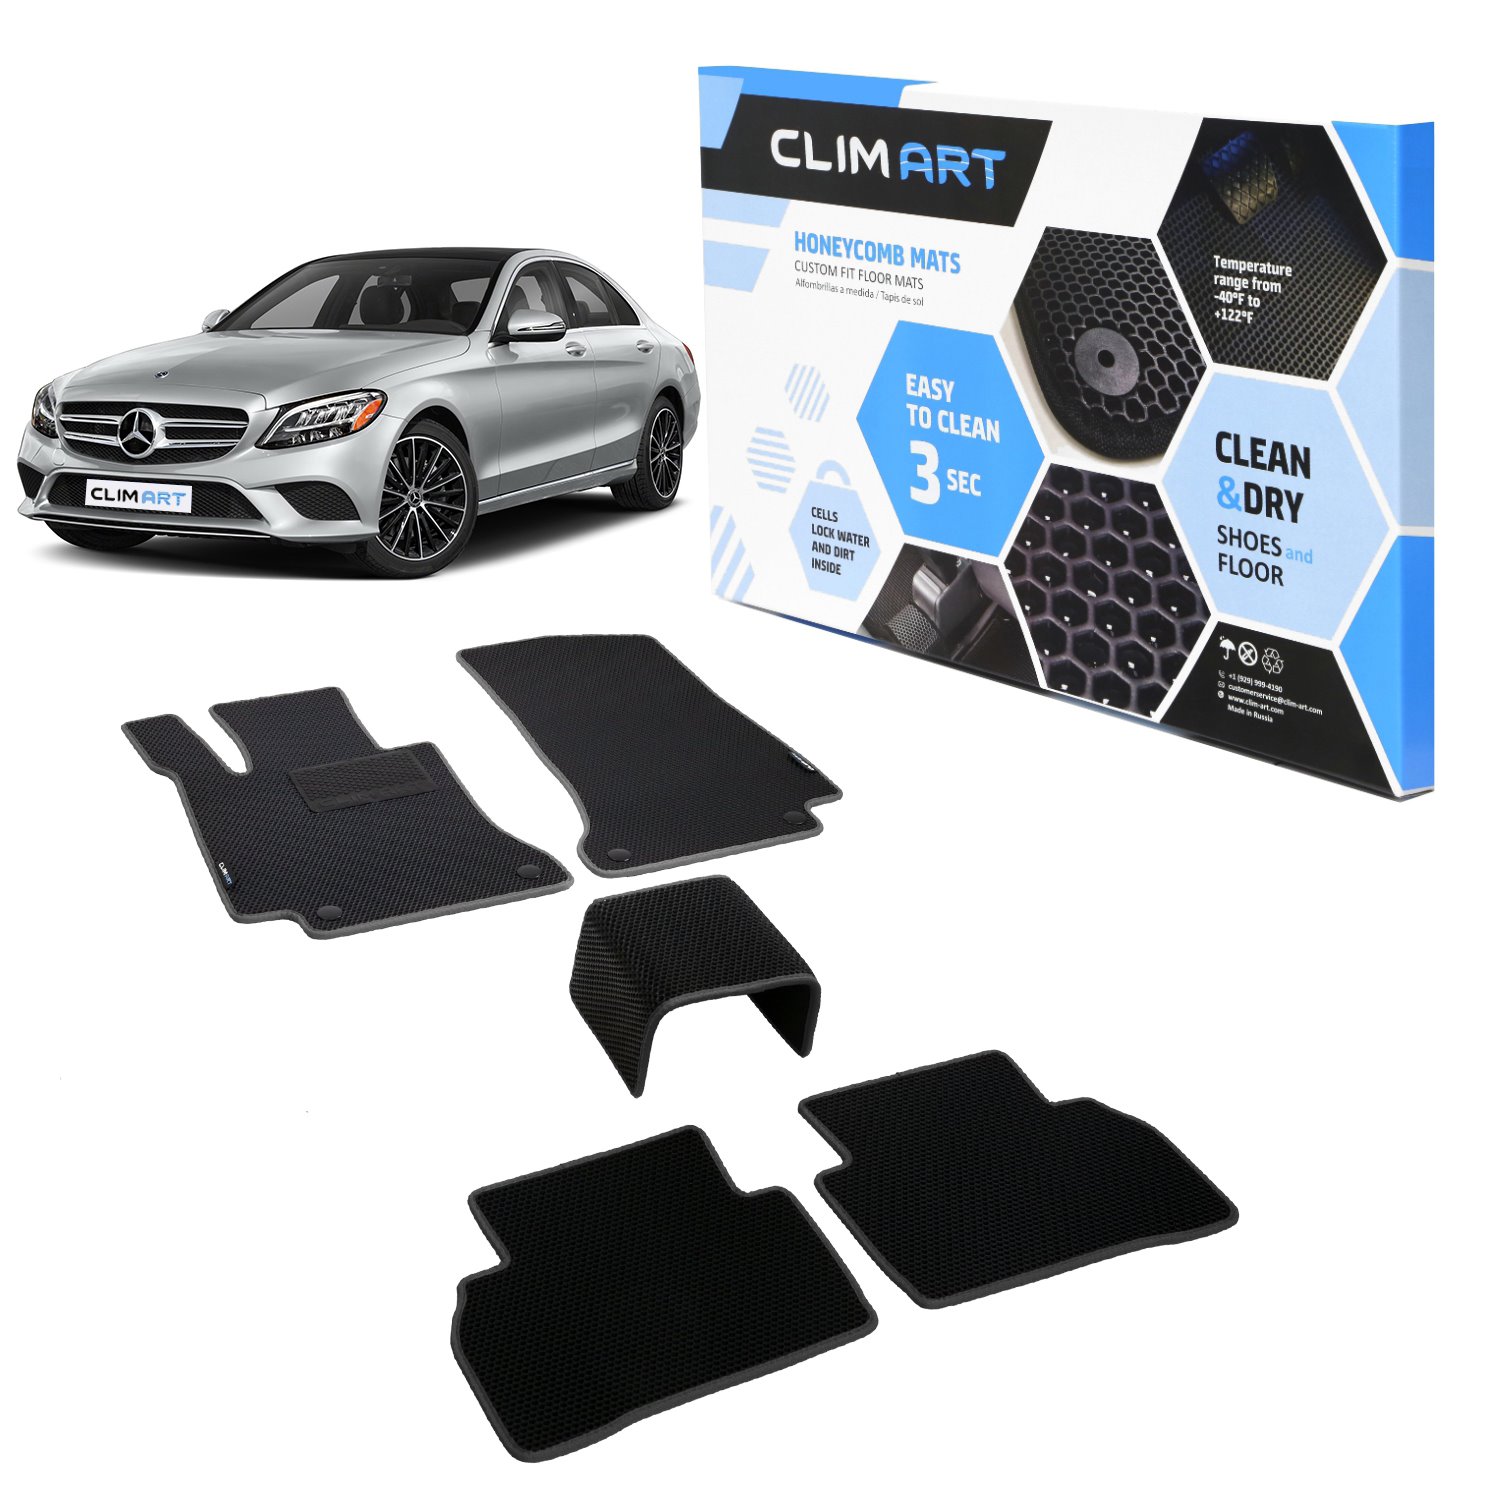 CLIM ART Honeycomb Custom Fit Floor Mats Fits Select Mercedes C-Class Sedan